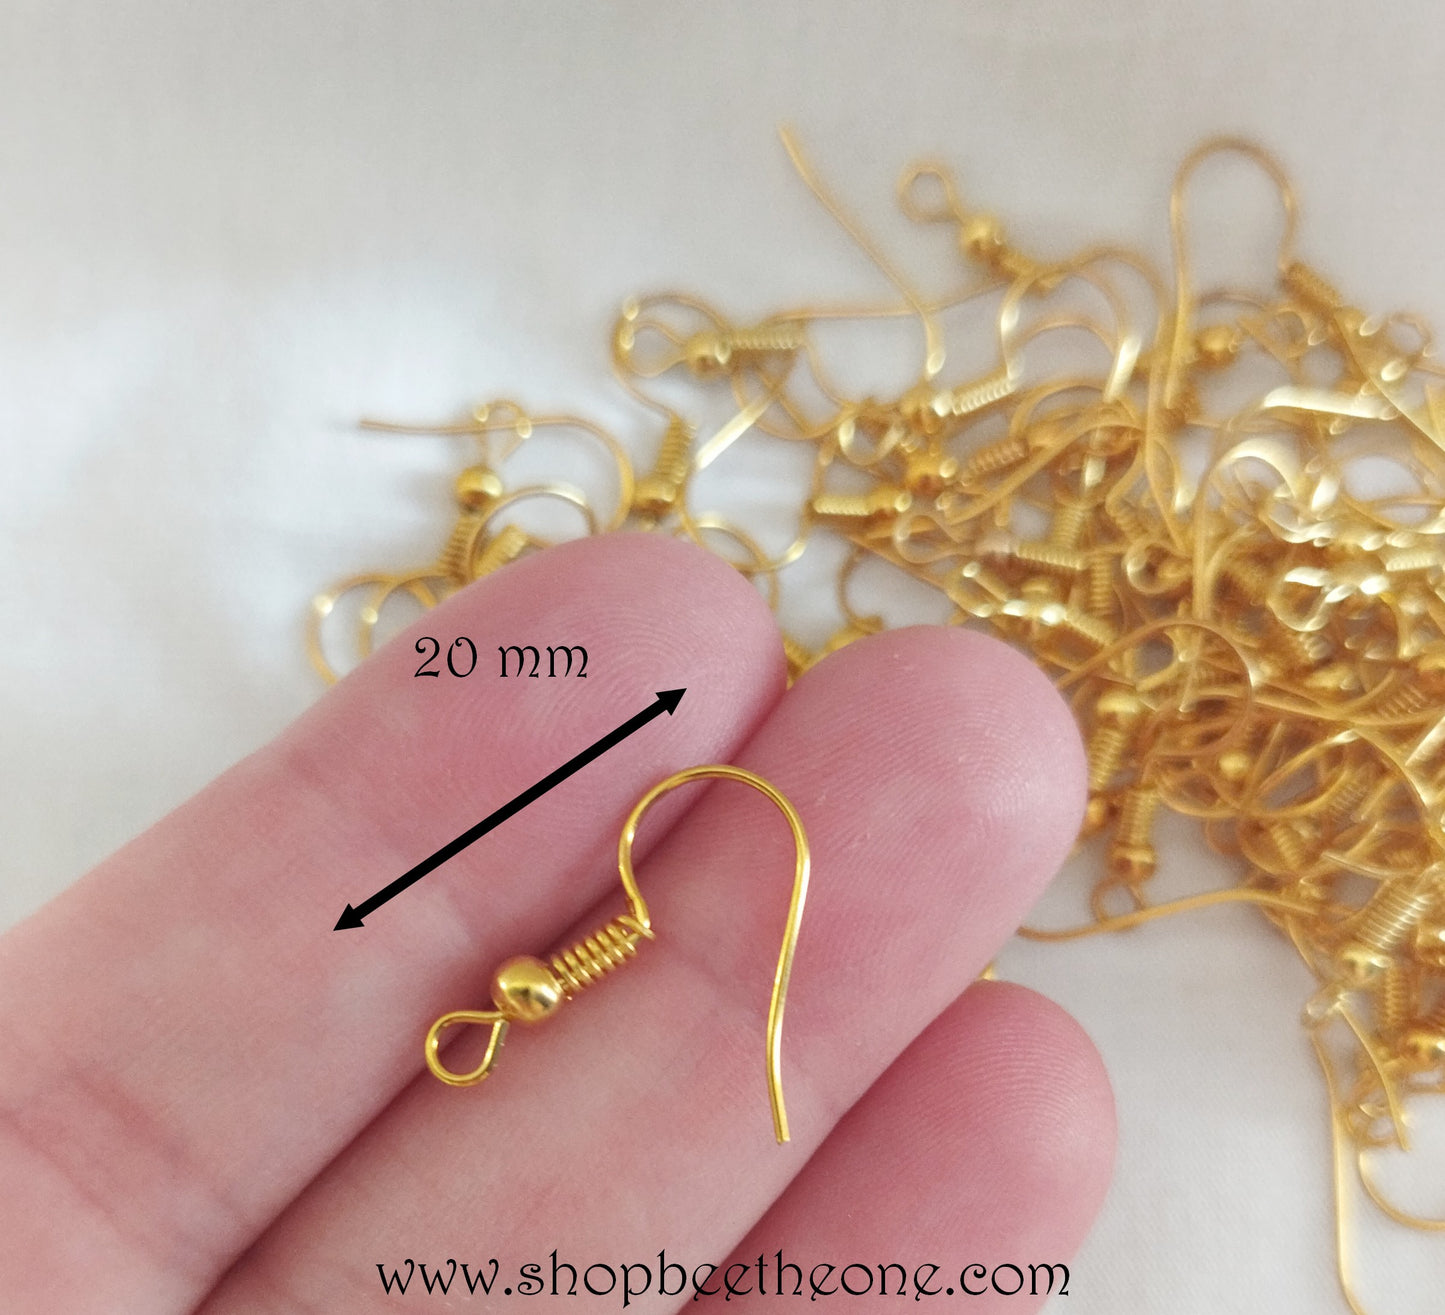 1 Paire de Supports Boucles d'oreilles Dormeuses - Jaune doré - 20 mm